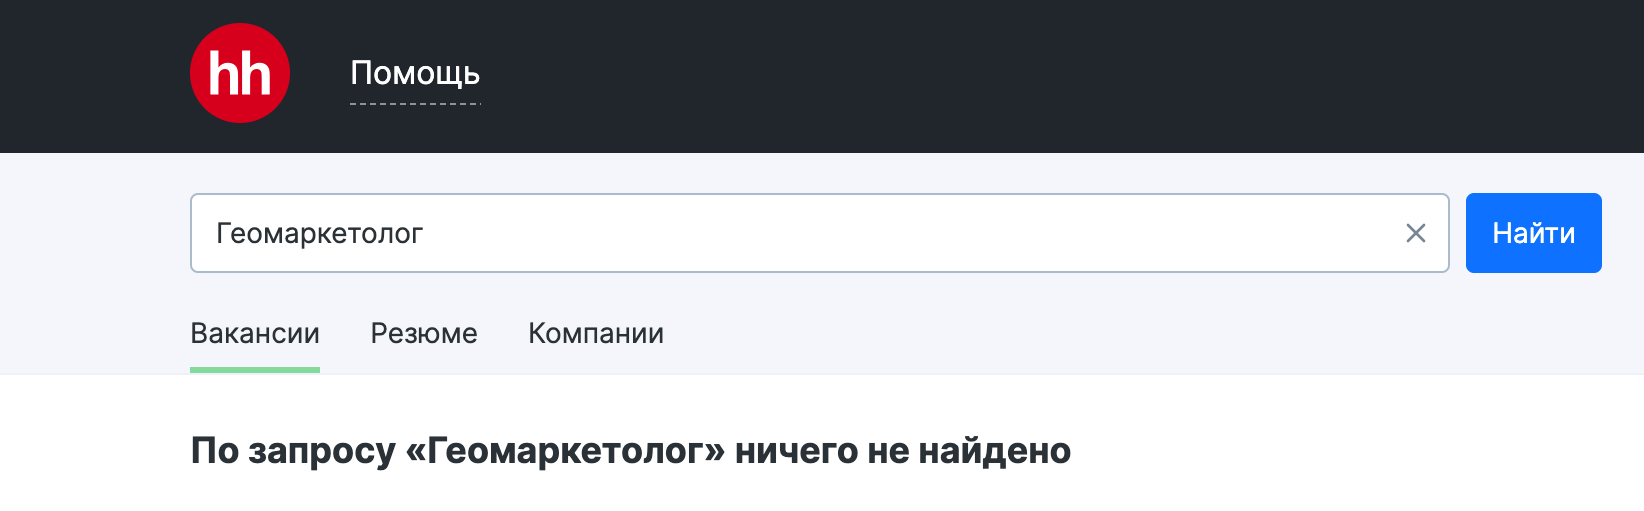 По поиску на hh.ru не найдено ни одной вакансии